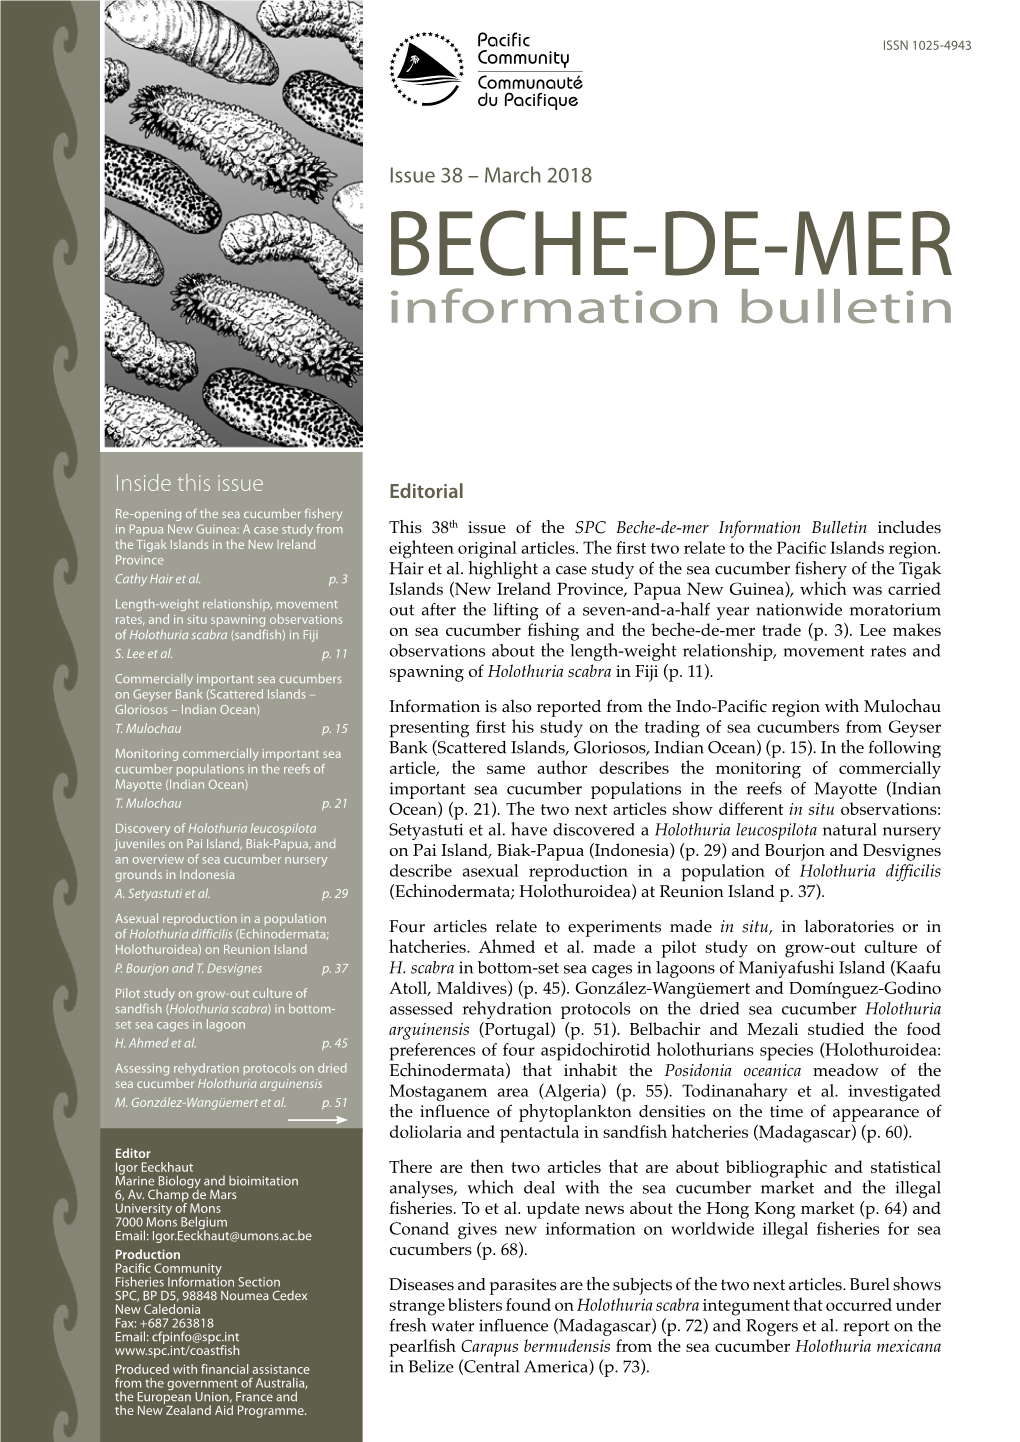 SPC Beche-De-Mer Information Bulletin Includes the Tigak Islands in the New Ireland Province Eighteen Original Articles